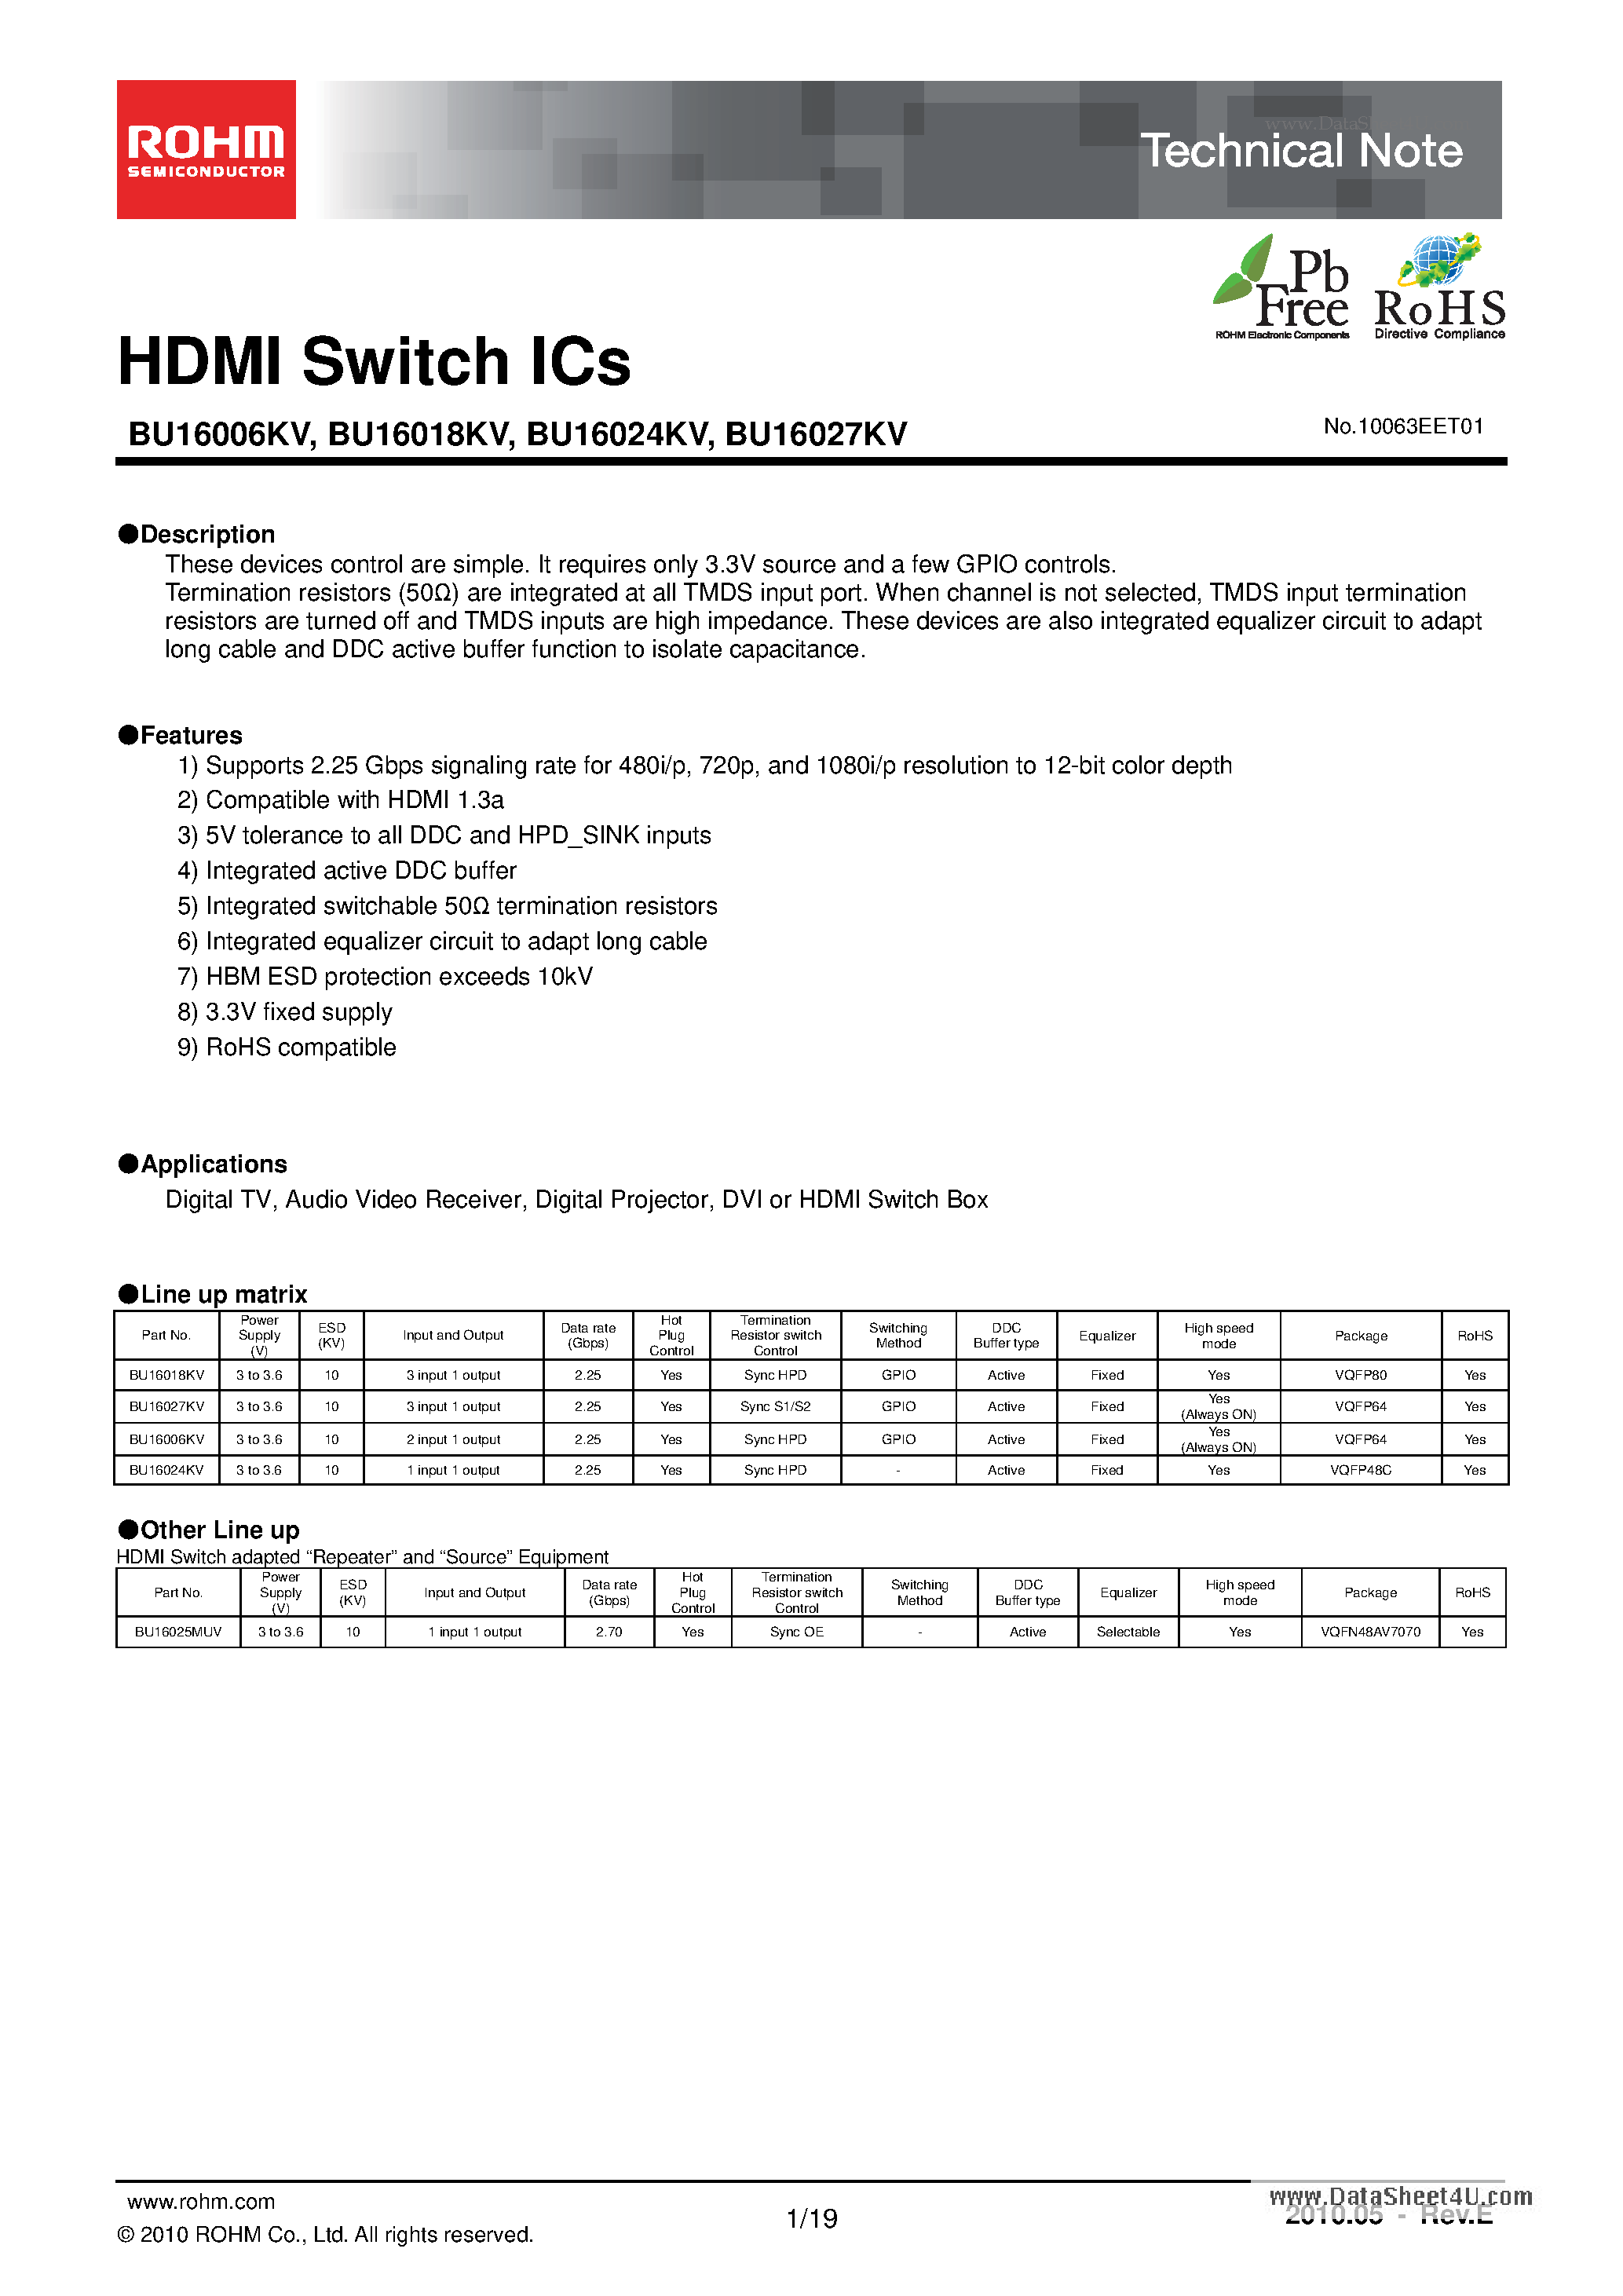 Даташит BU16006KV - HDMI Switch ICs страница 1